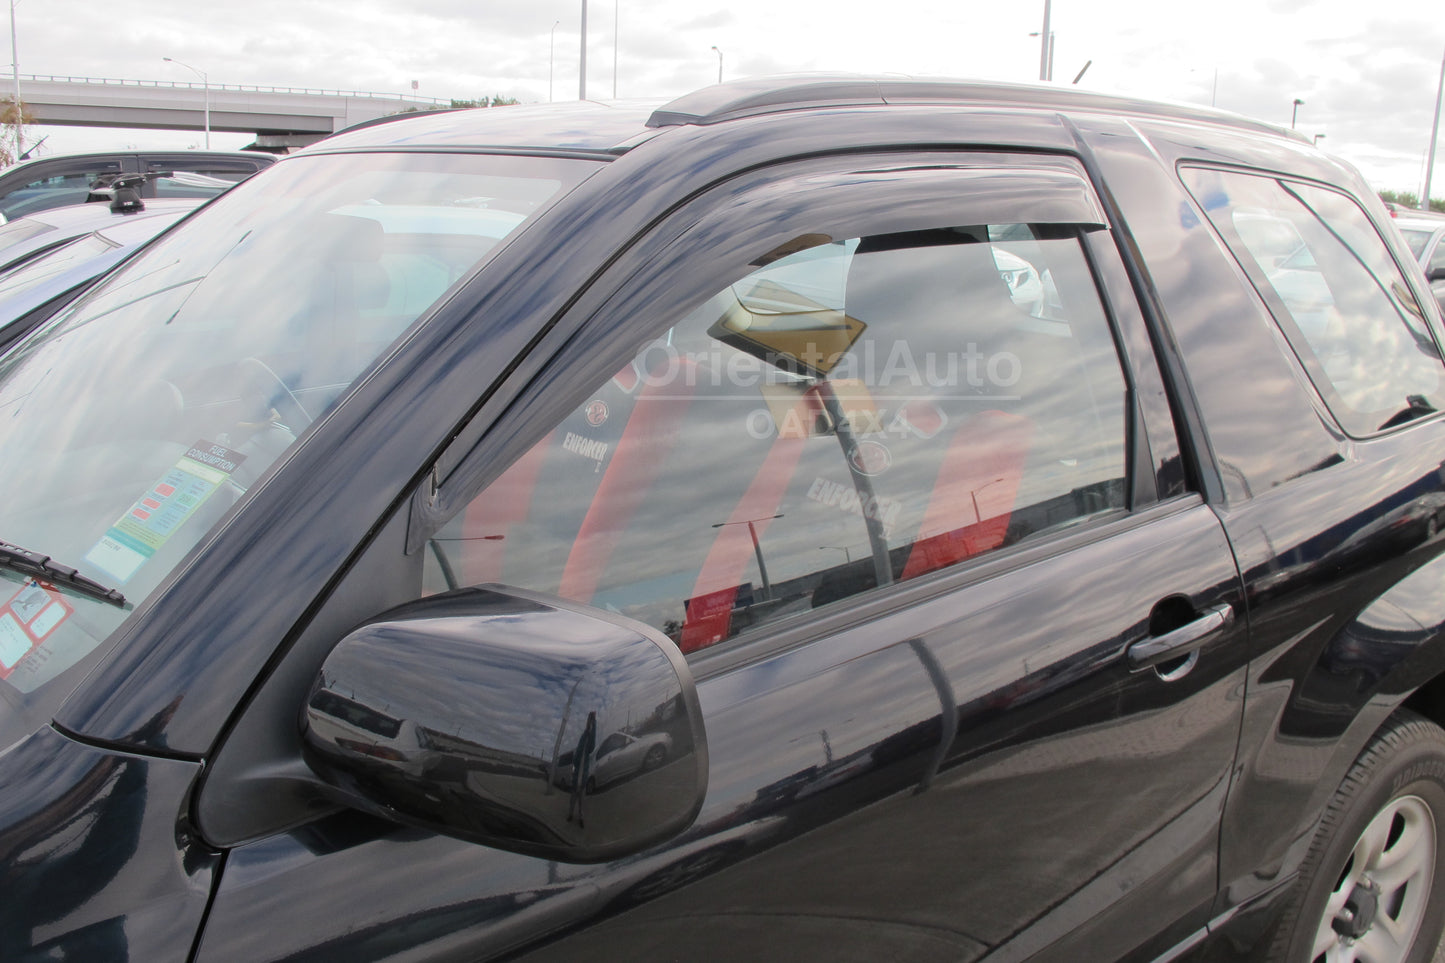 Premium Weather Shields For Suzuki Grand Vitara 3 Doors 2006-2018 Weathershields Window Visors